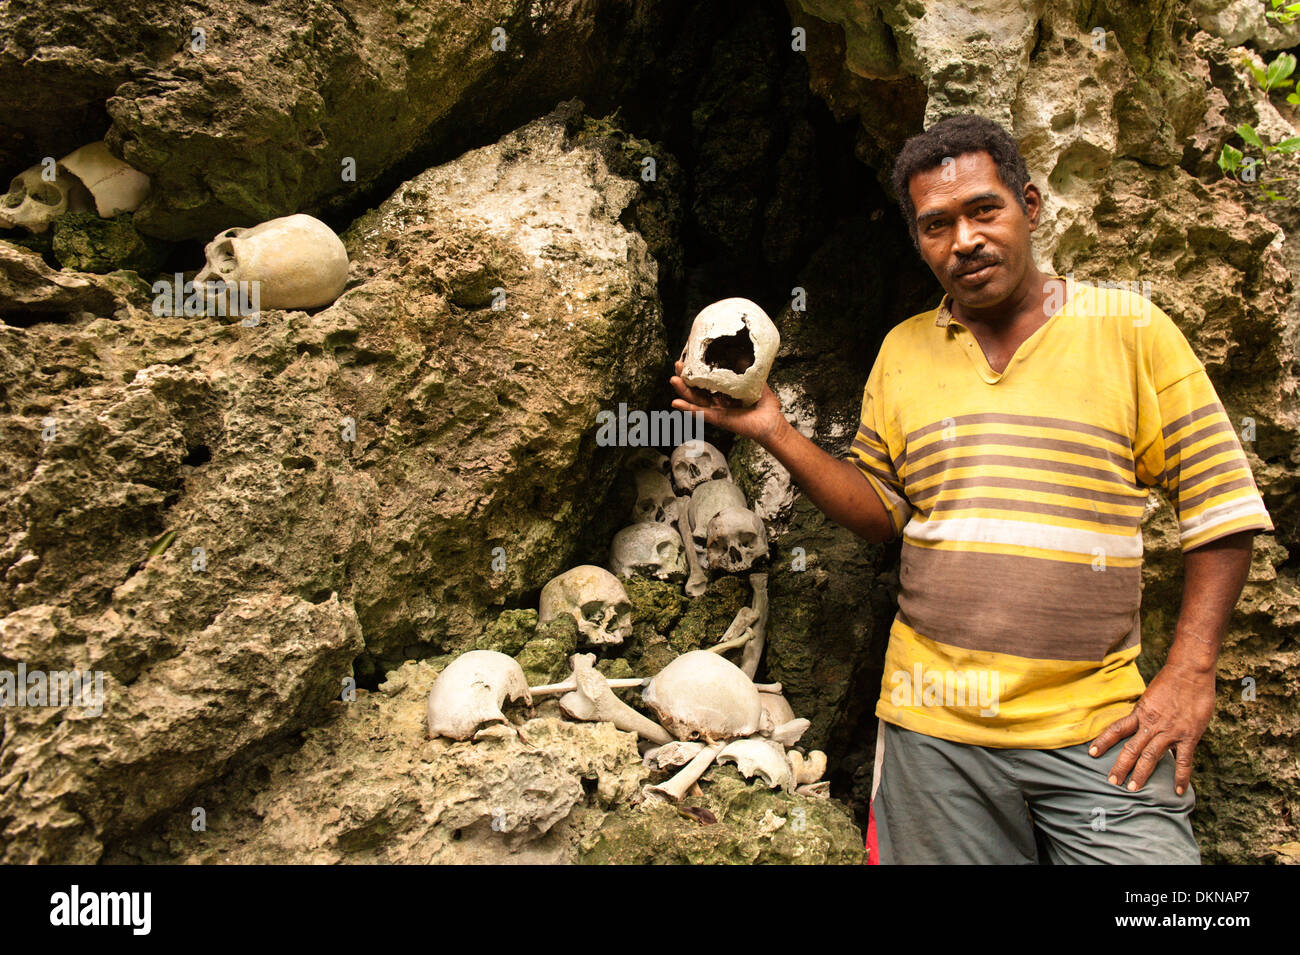 Mann, der Schädel unter den menschlichen Überresten, was, die er sagte, von Feinden getötet und gegessen werden von seinen Vorfahren, renommierten Krieger waren. Fidschi-Inseln Stockfoto